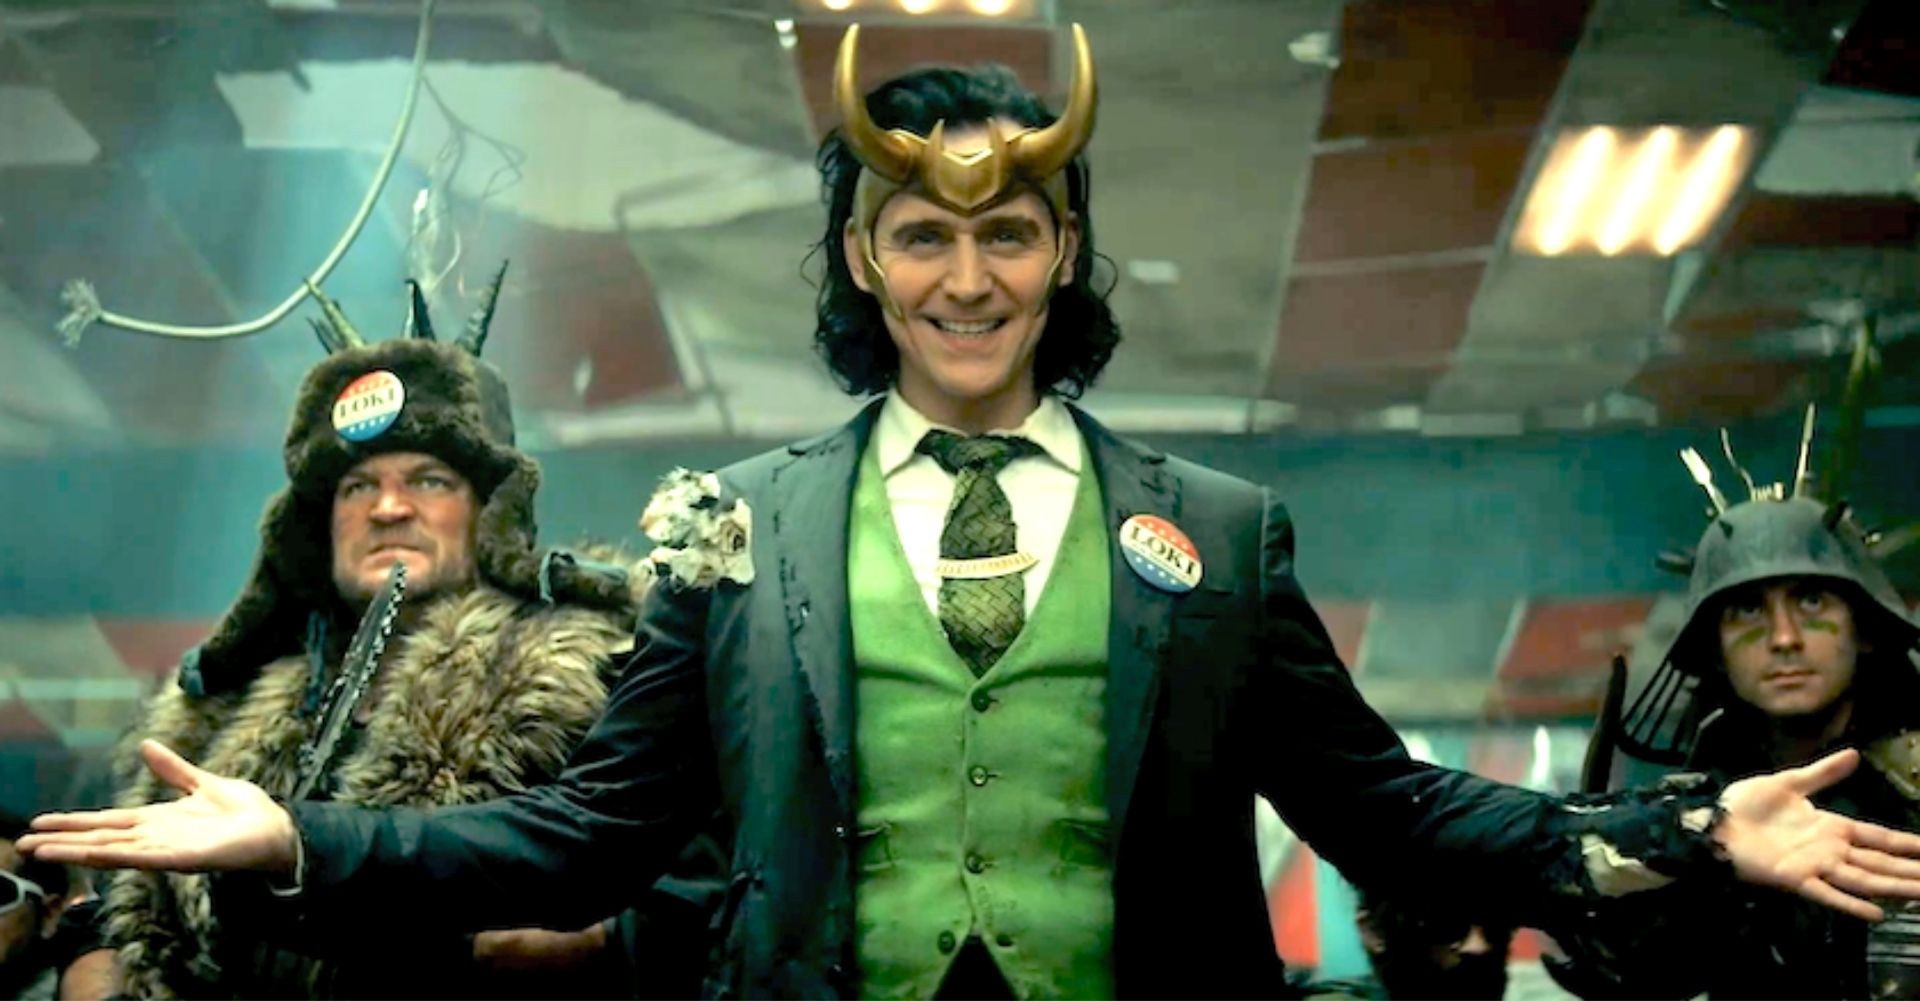 Lokiho bláznivá jízda časoprostorem, bordel ve Space Jam a další novinky | Fandíme filmu